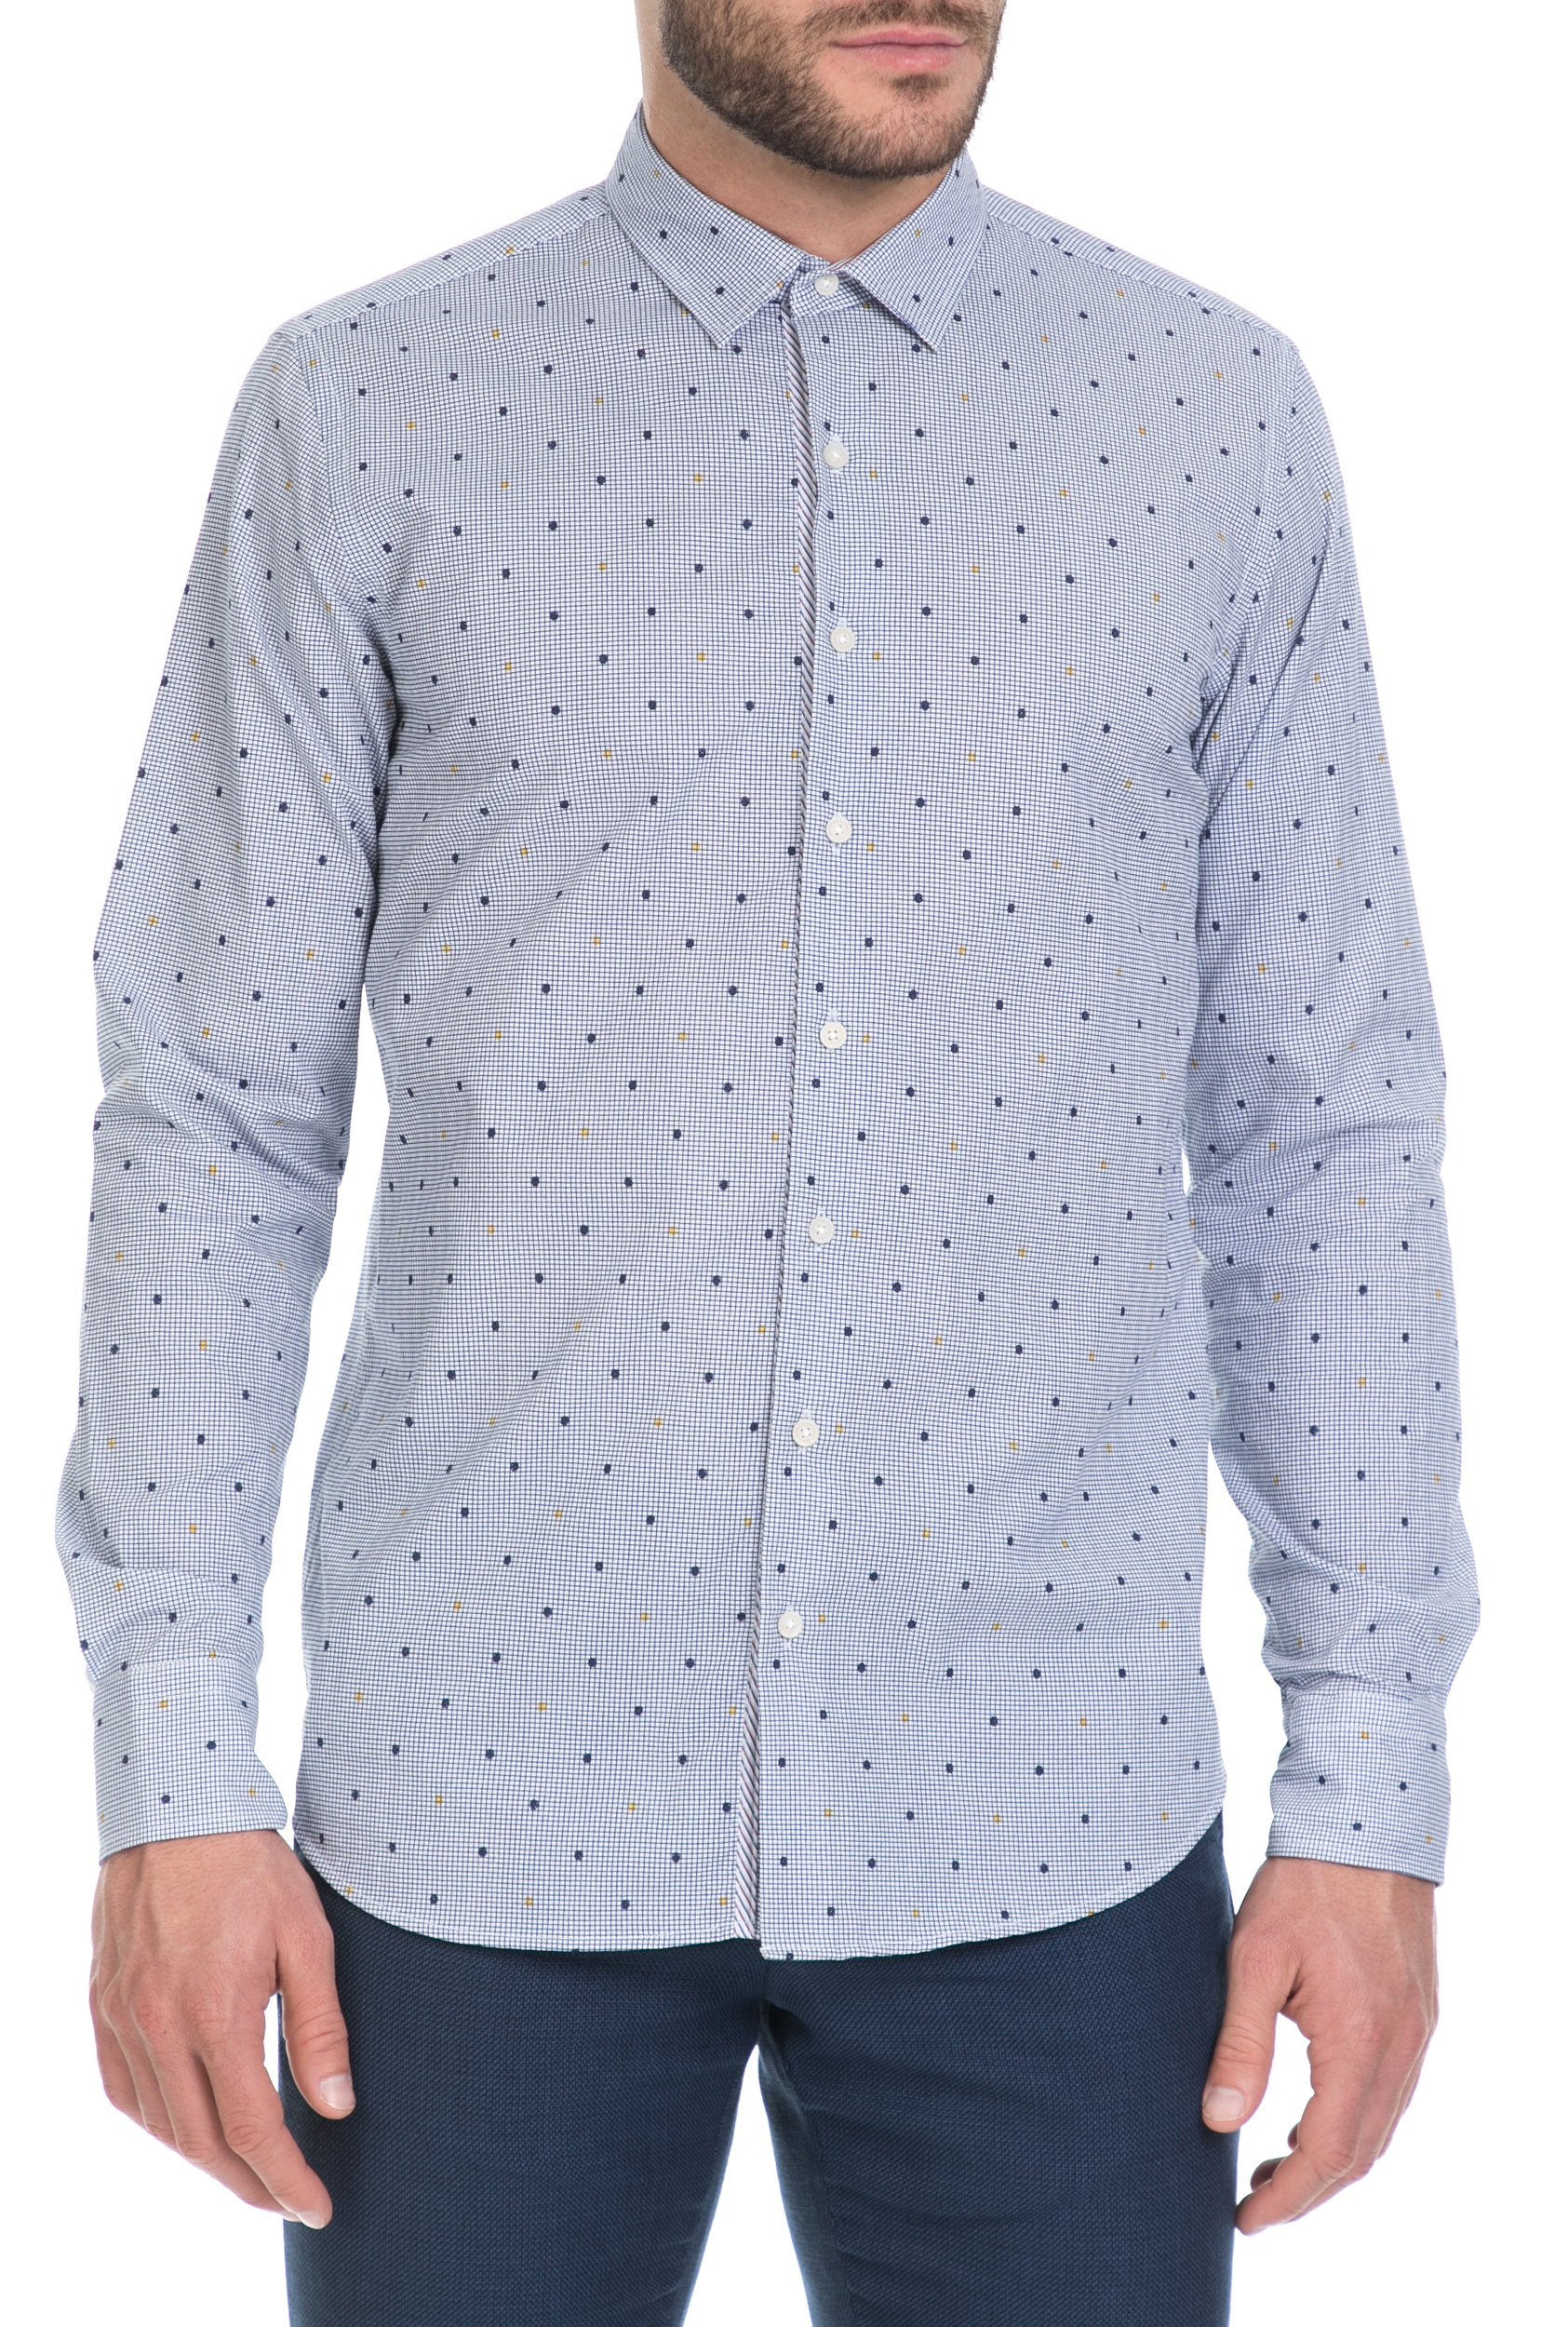 Ανδρικά/Ρούχα/Πουκάμισα/Μακρυμάνικα SSEINSE - Ανδρικό πουκάμισο SSEINSE μπλε-λευκό